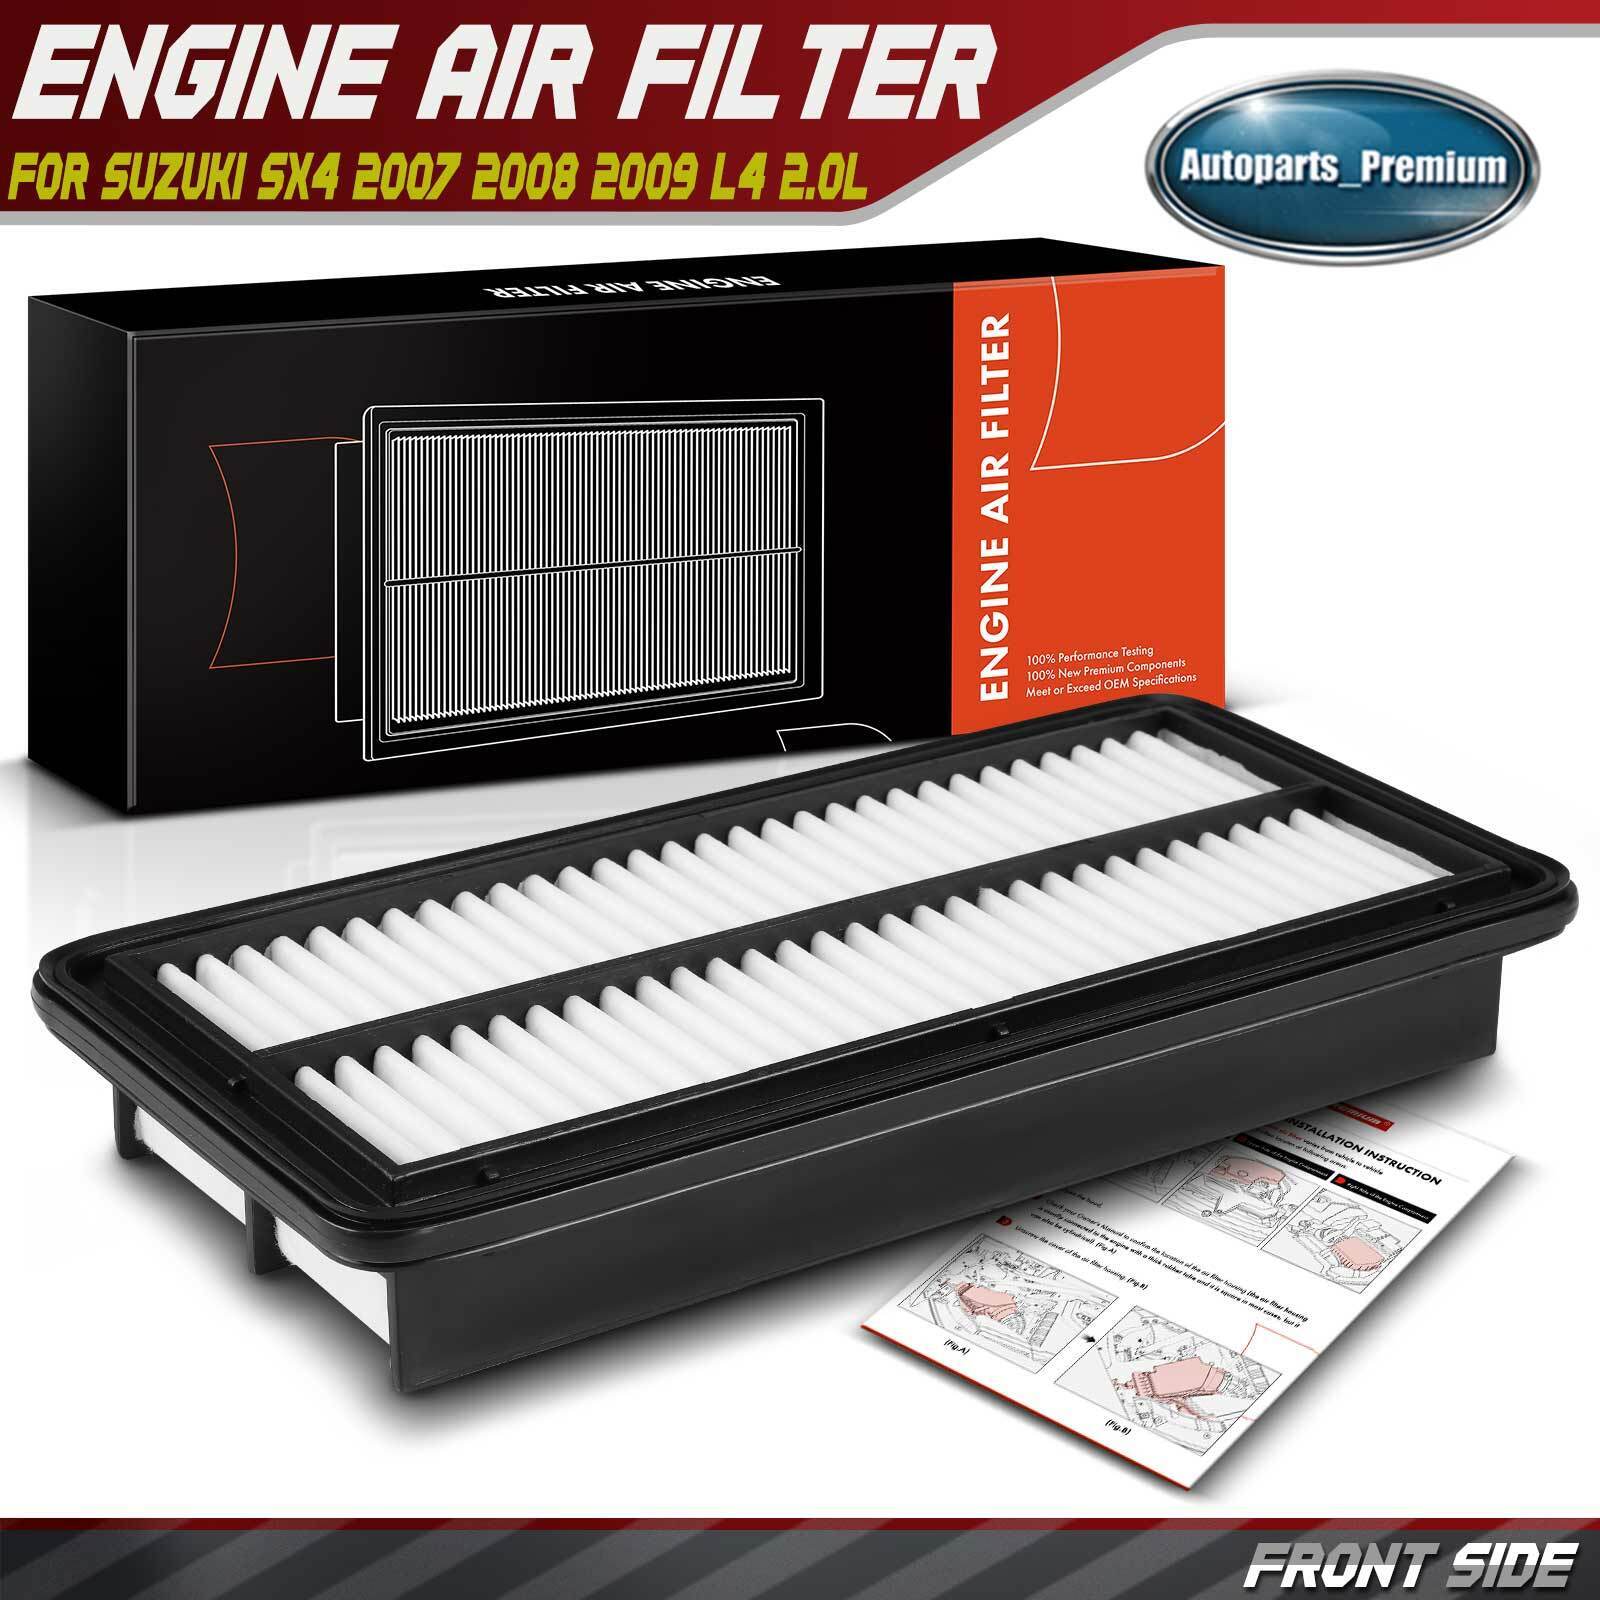 Engine Air Filter for Suzuki SX4 2007 2008 2009 L4 2.0L 1378080J00 Rigid Panel